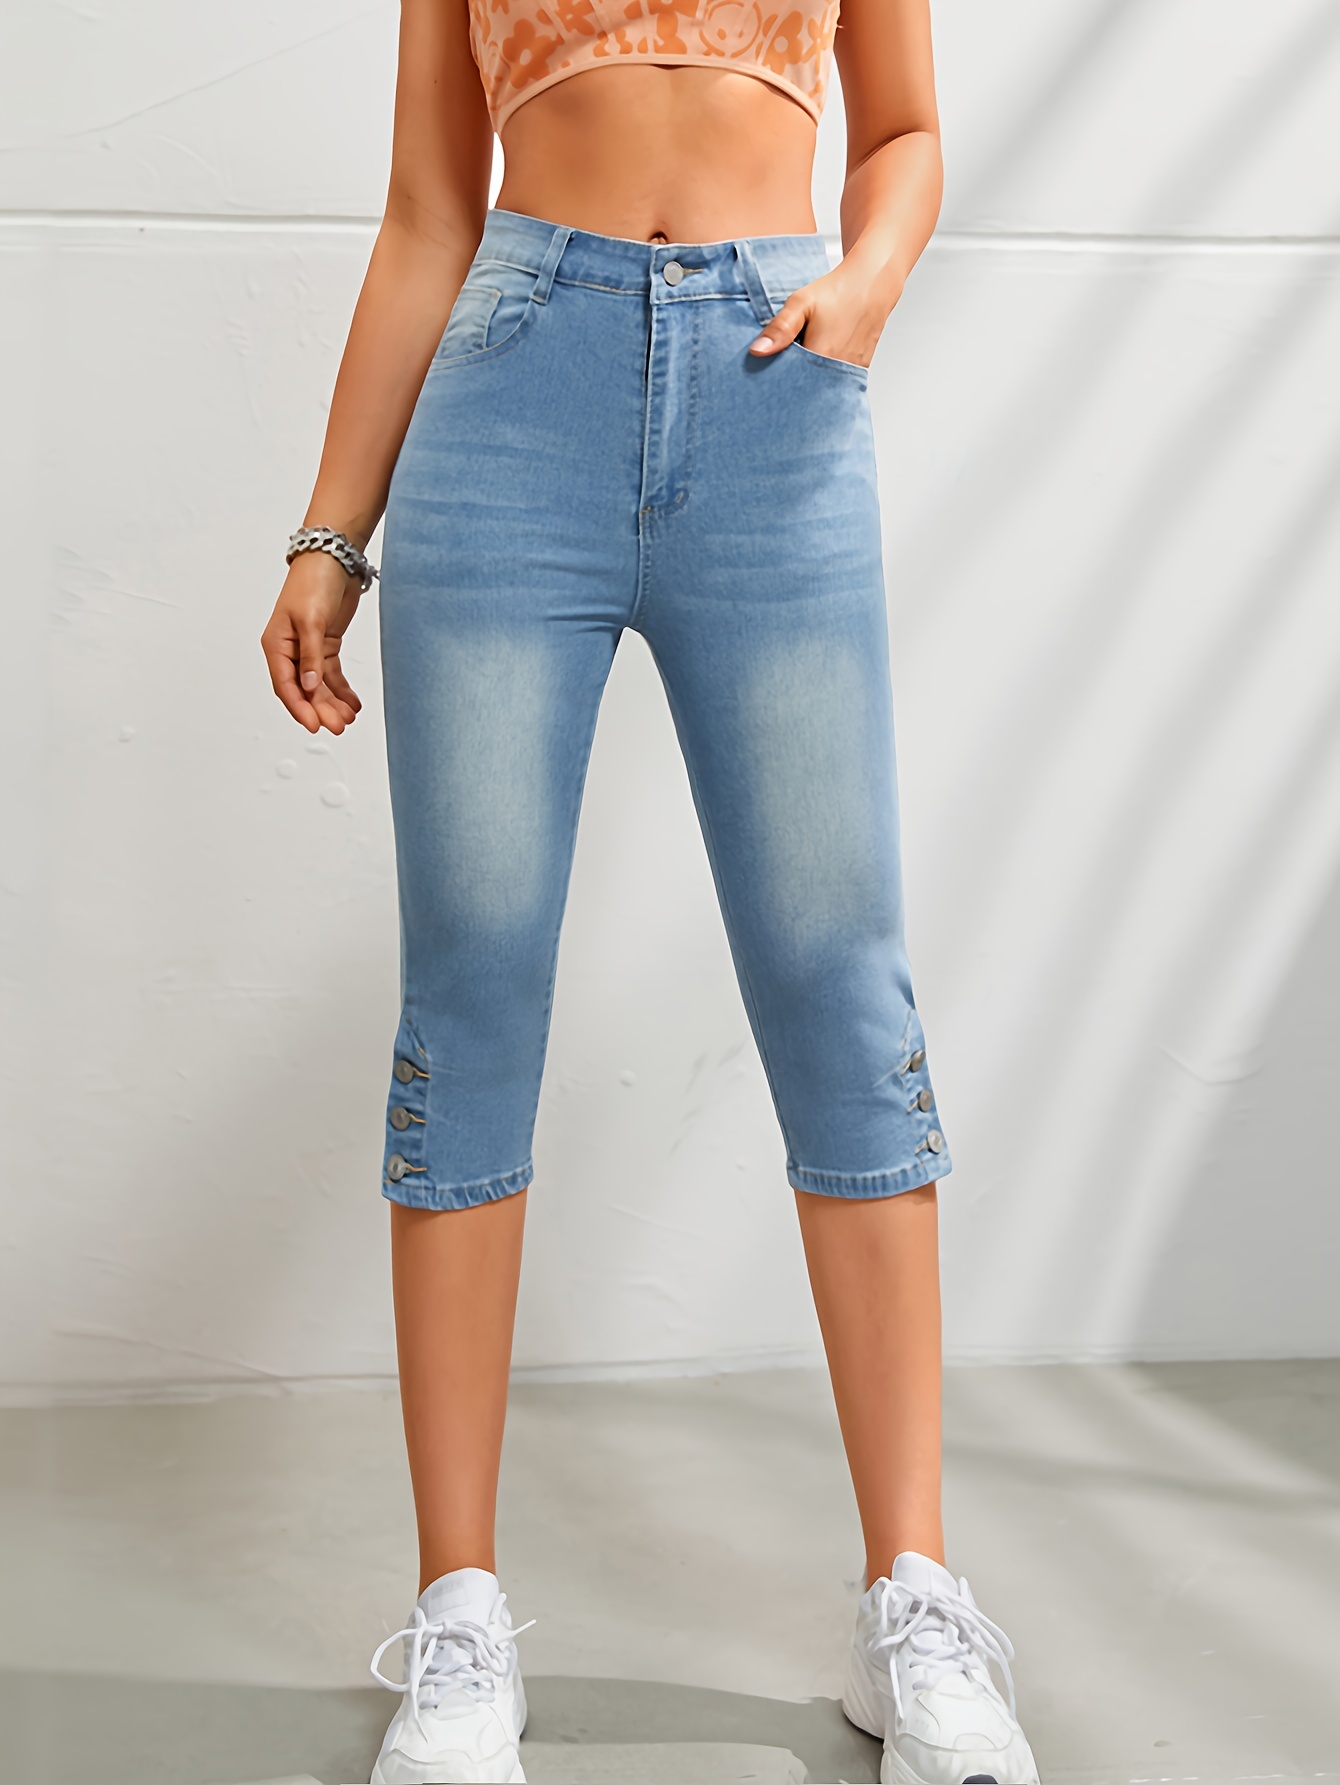 KA * Jeans Capri De Textura Suave Para Mujer , Cintura Elástica